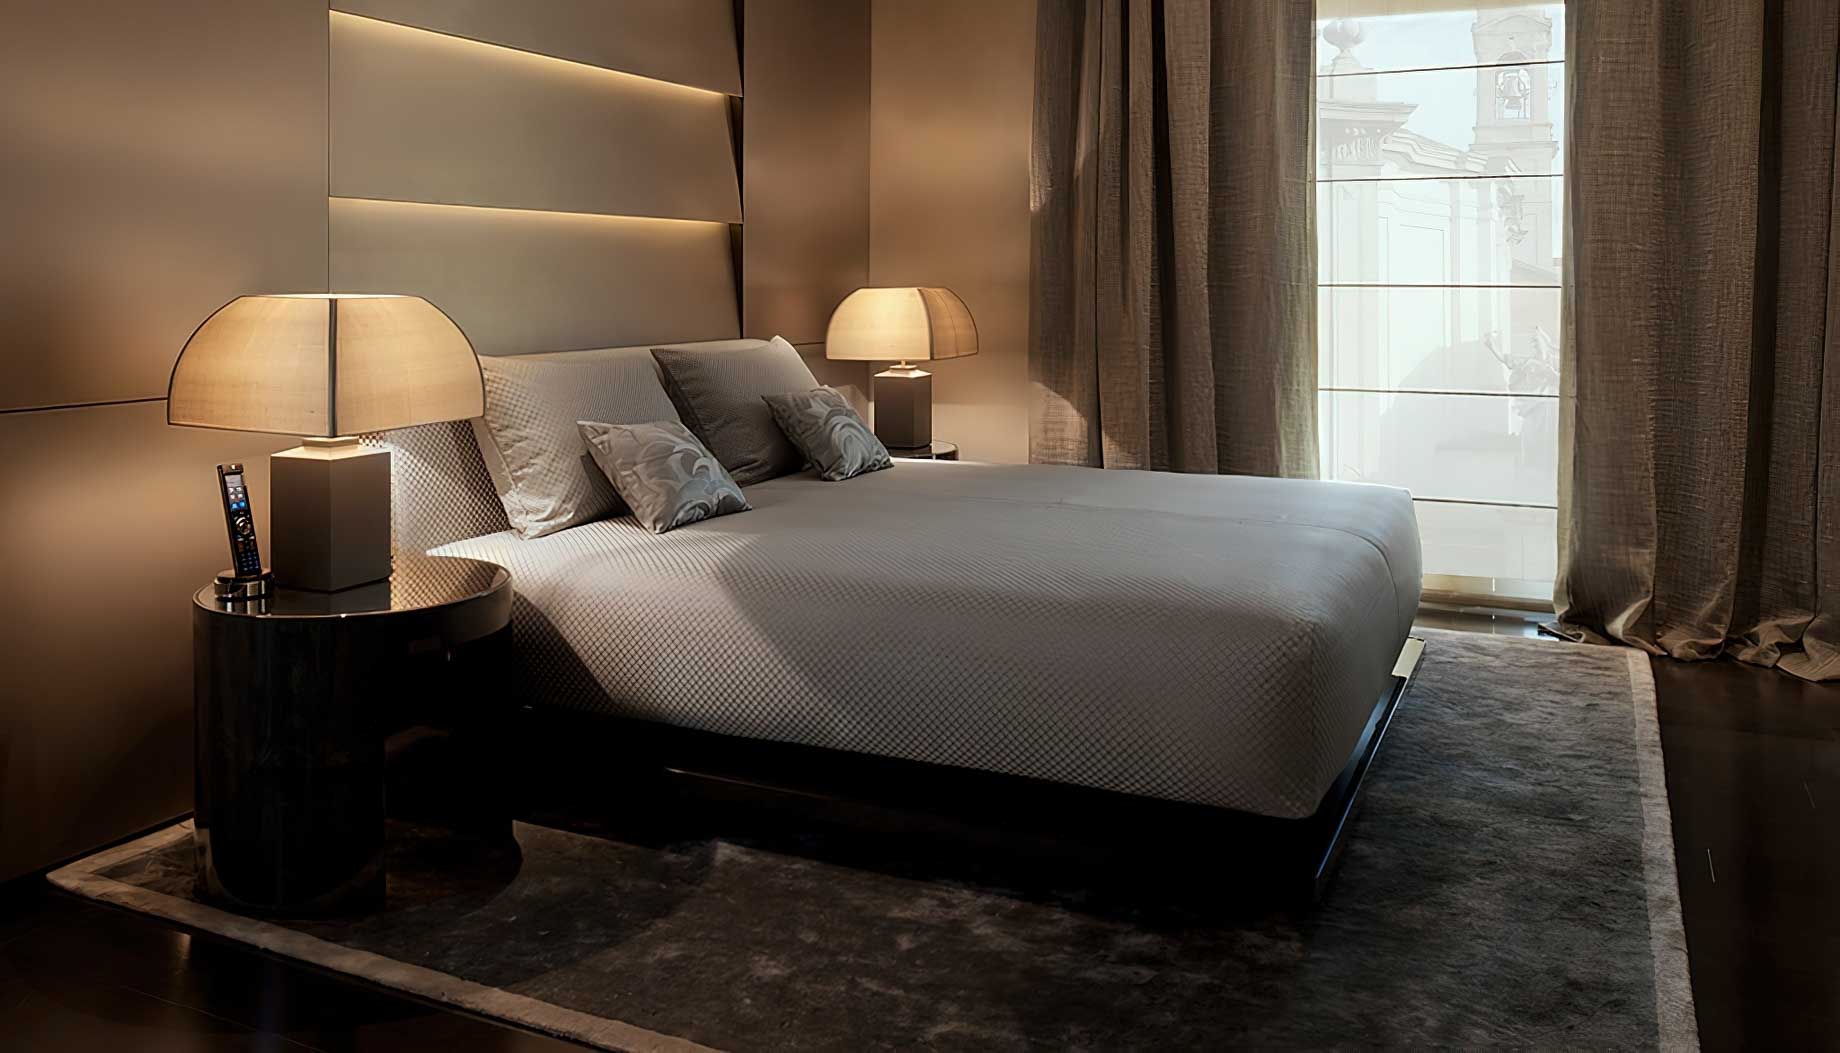 042 – Armani Hotel Milano – Milan, Italy – Armani Suite Bedroom